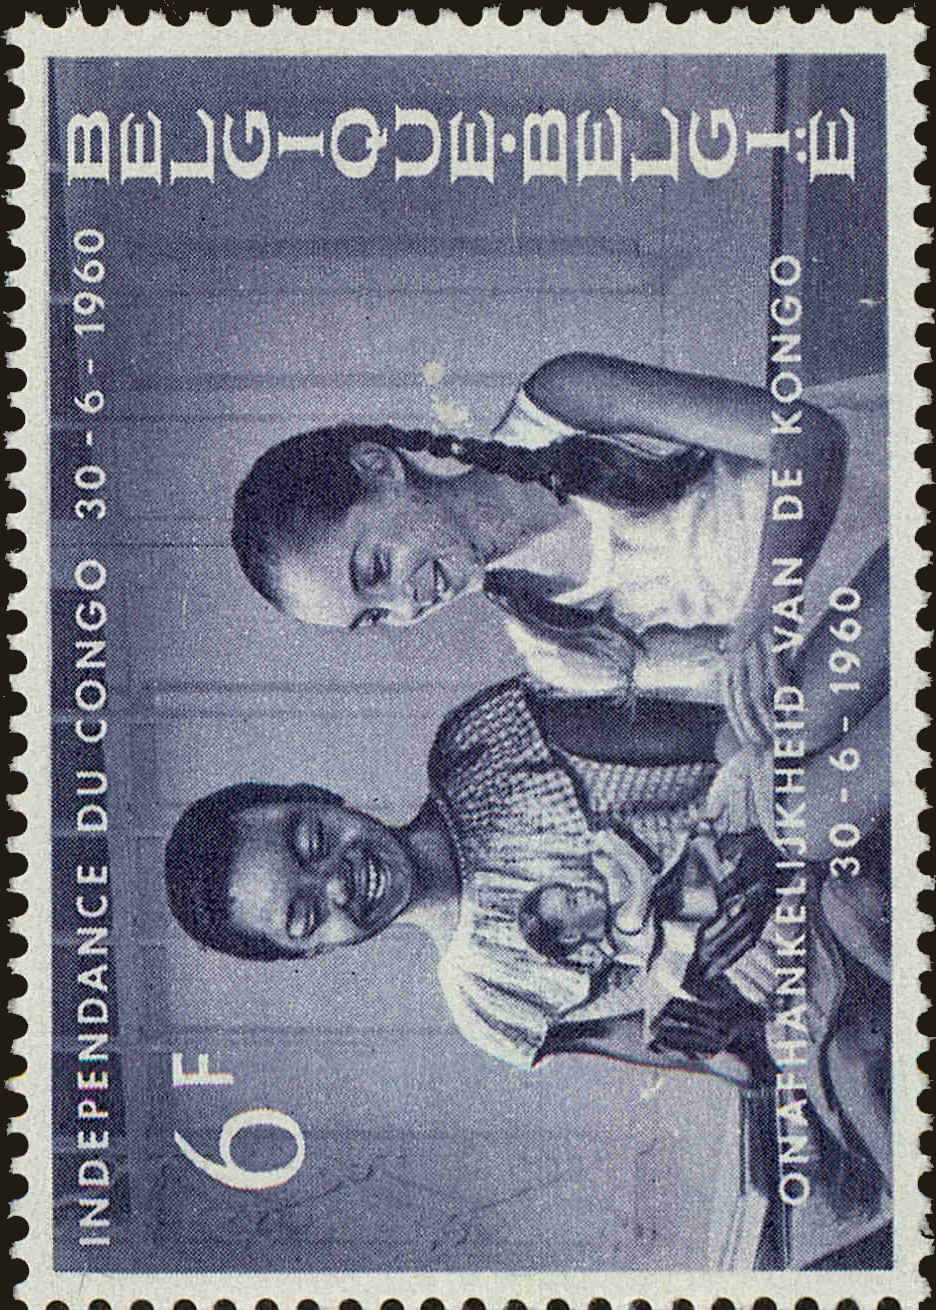 Front view of Belgium 551 collectors stamp